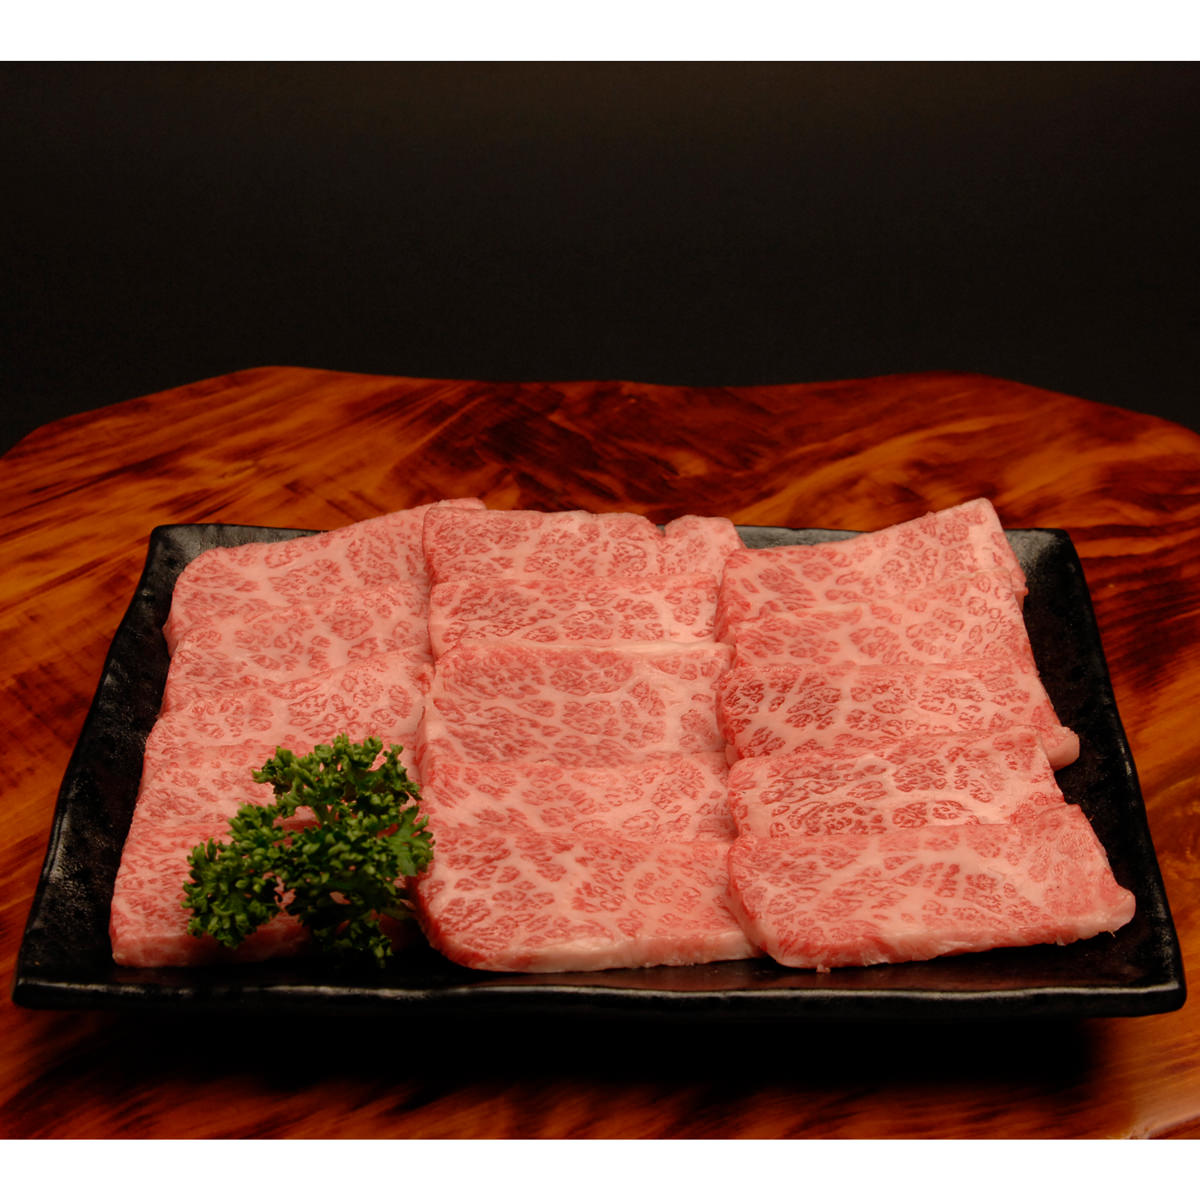 牛肉 神戸牛 豪華 焼肉セット 1.2kg カルビ 赤身 上カルビ 焼き肉 冷凍 和牛 国産 贅沢 神戸ビーフ 帝神